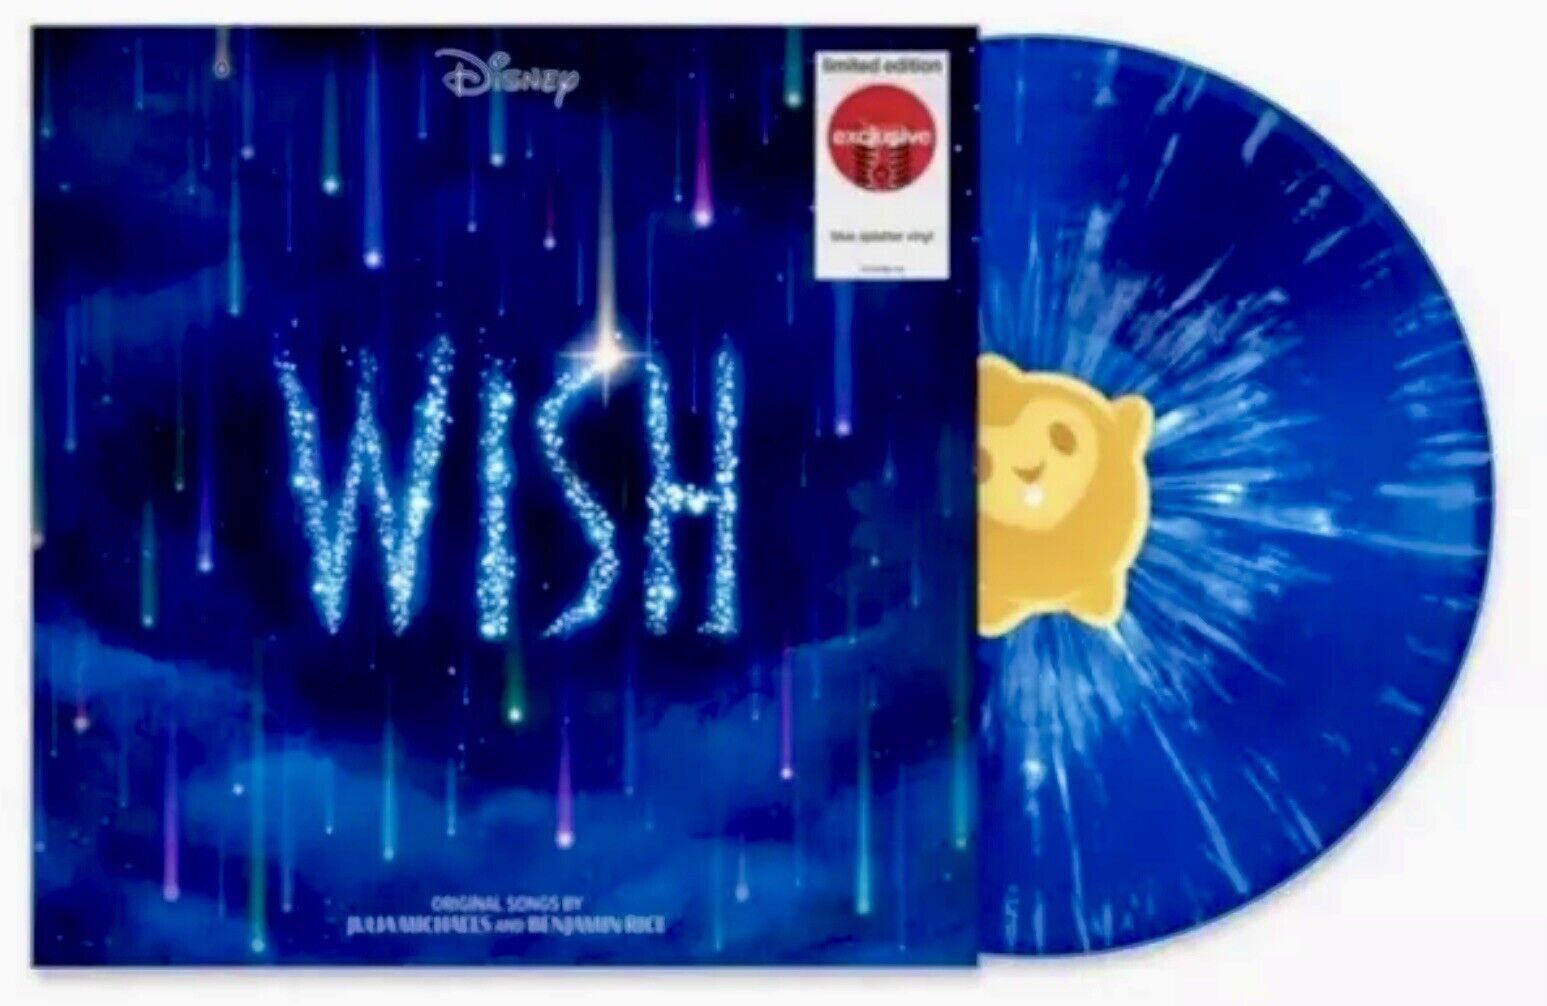 DISNEY WISH SOUNDTRACK Target Exclusive Limited Blue Splatter Vinyl LP Sealed